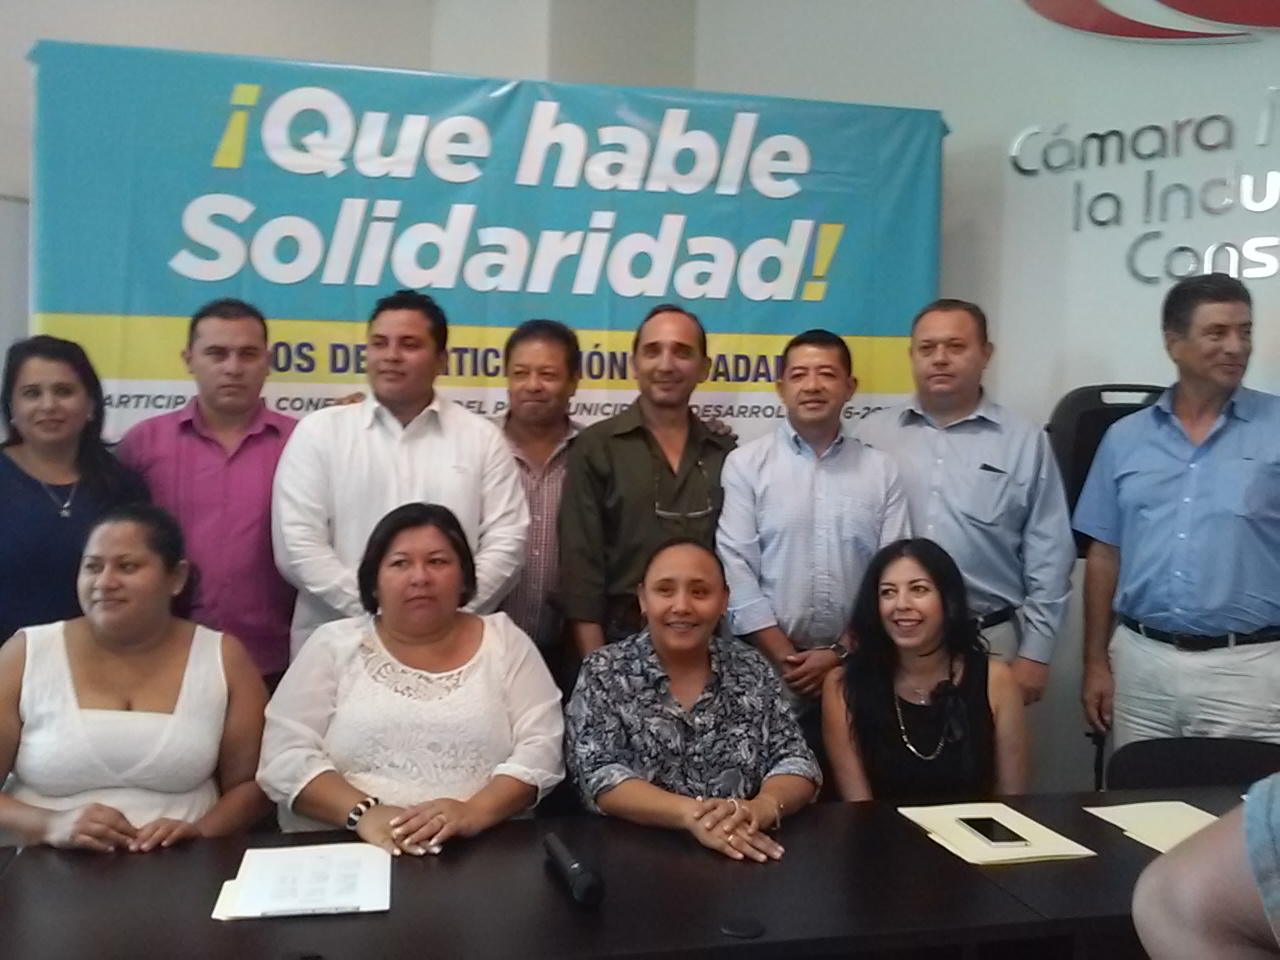 Rueda de prensa de Cristina Torres, alcaldesa electa de Solidaridad.